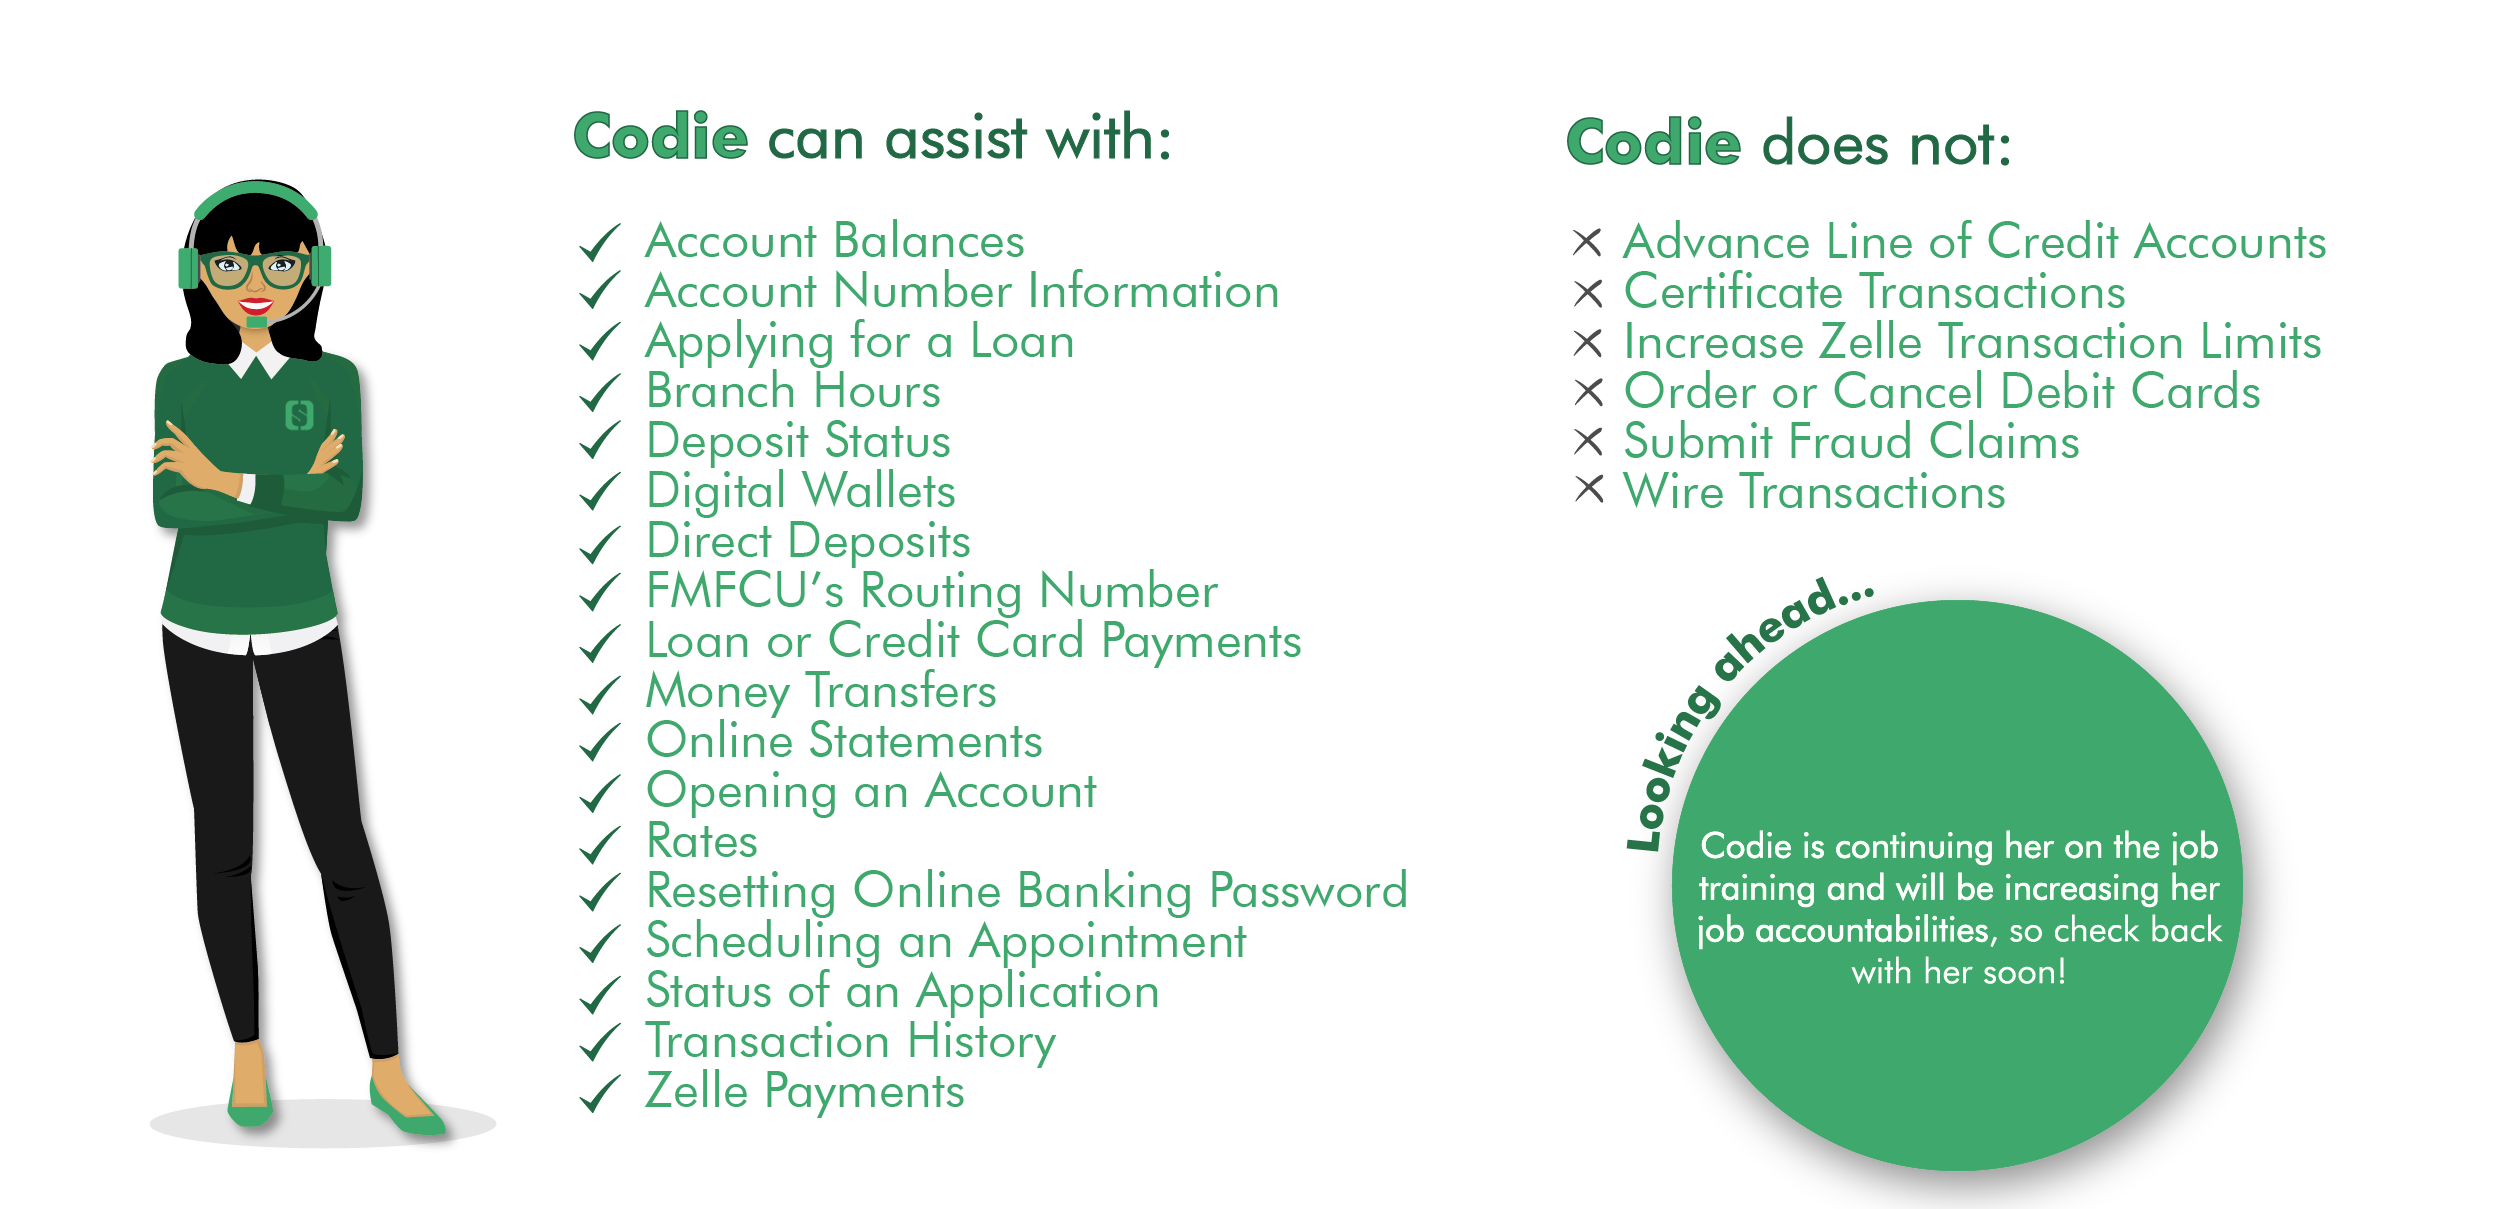 List of Codie capabilities